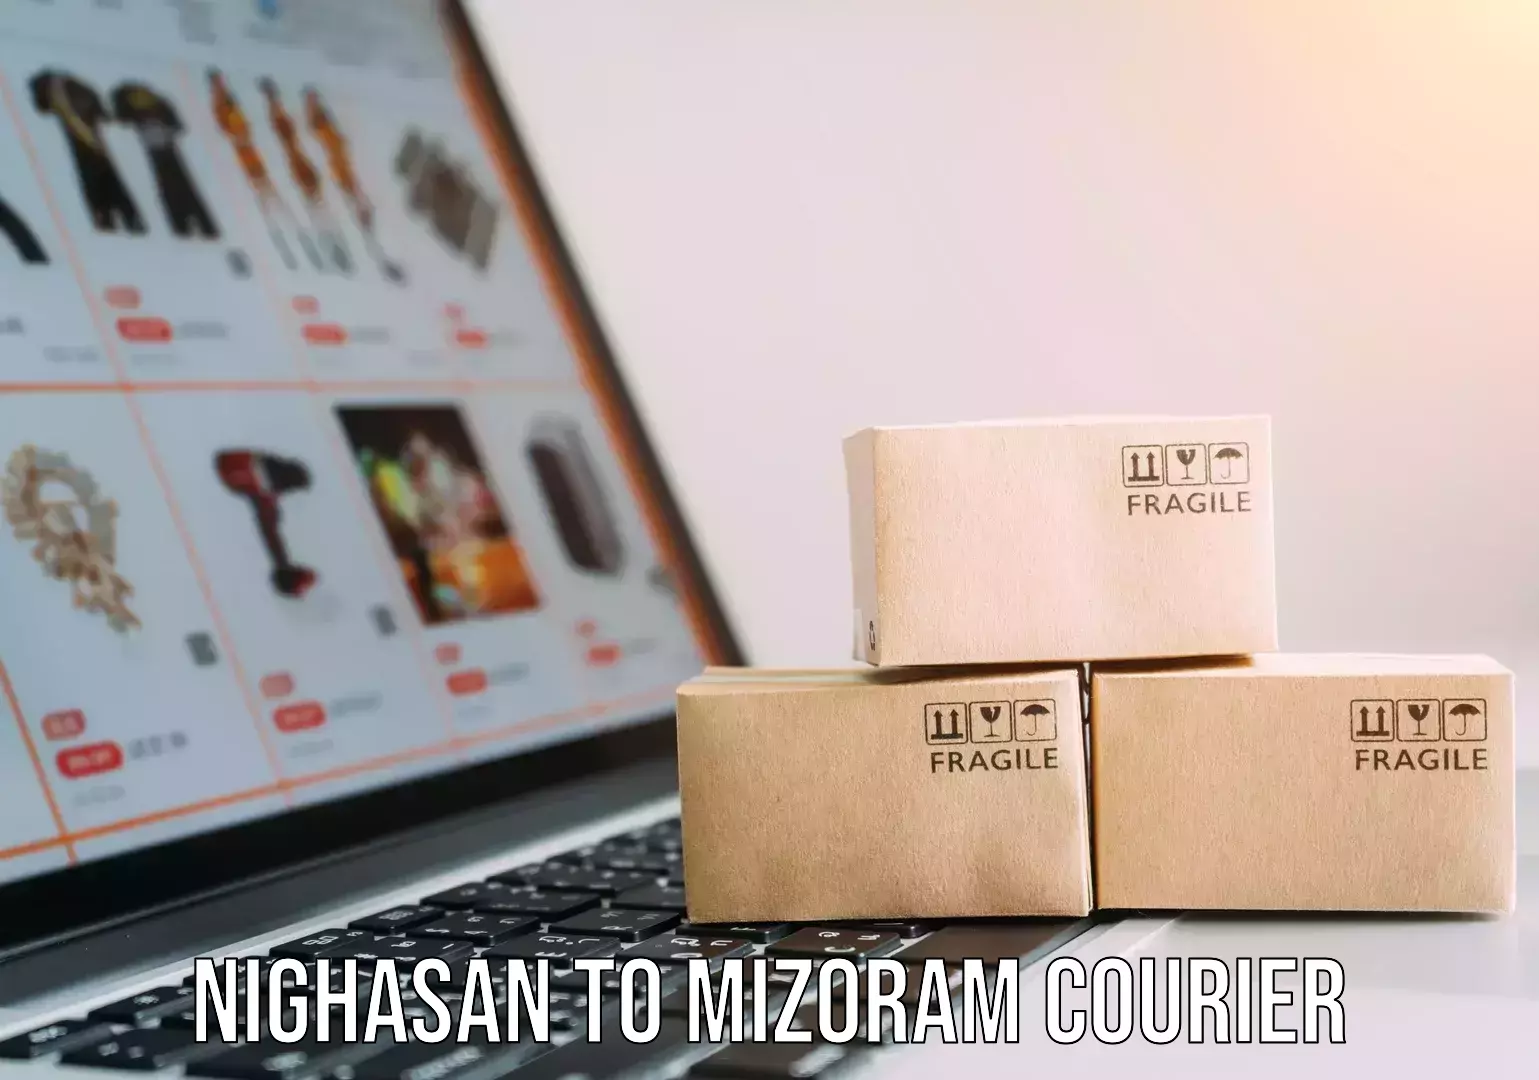 Professional packing services Nighasan to Mizoram